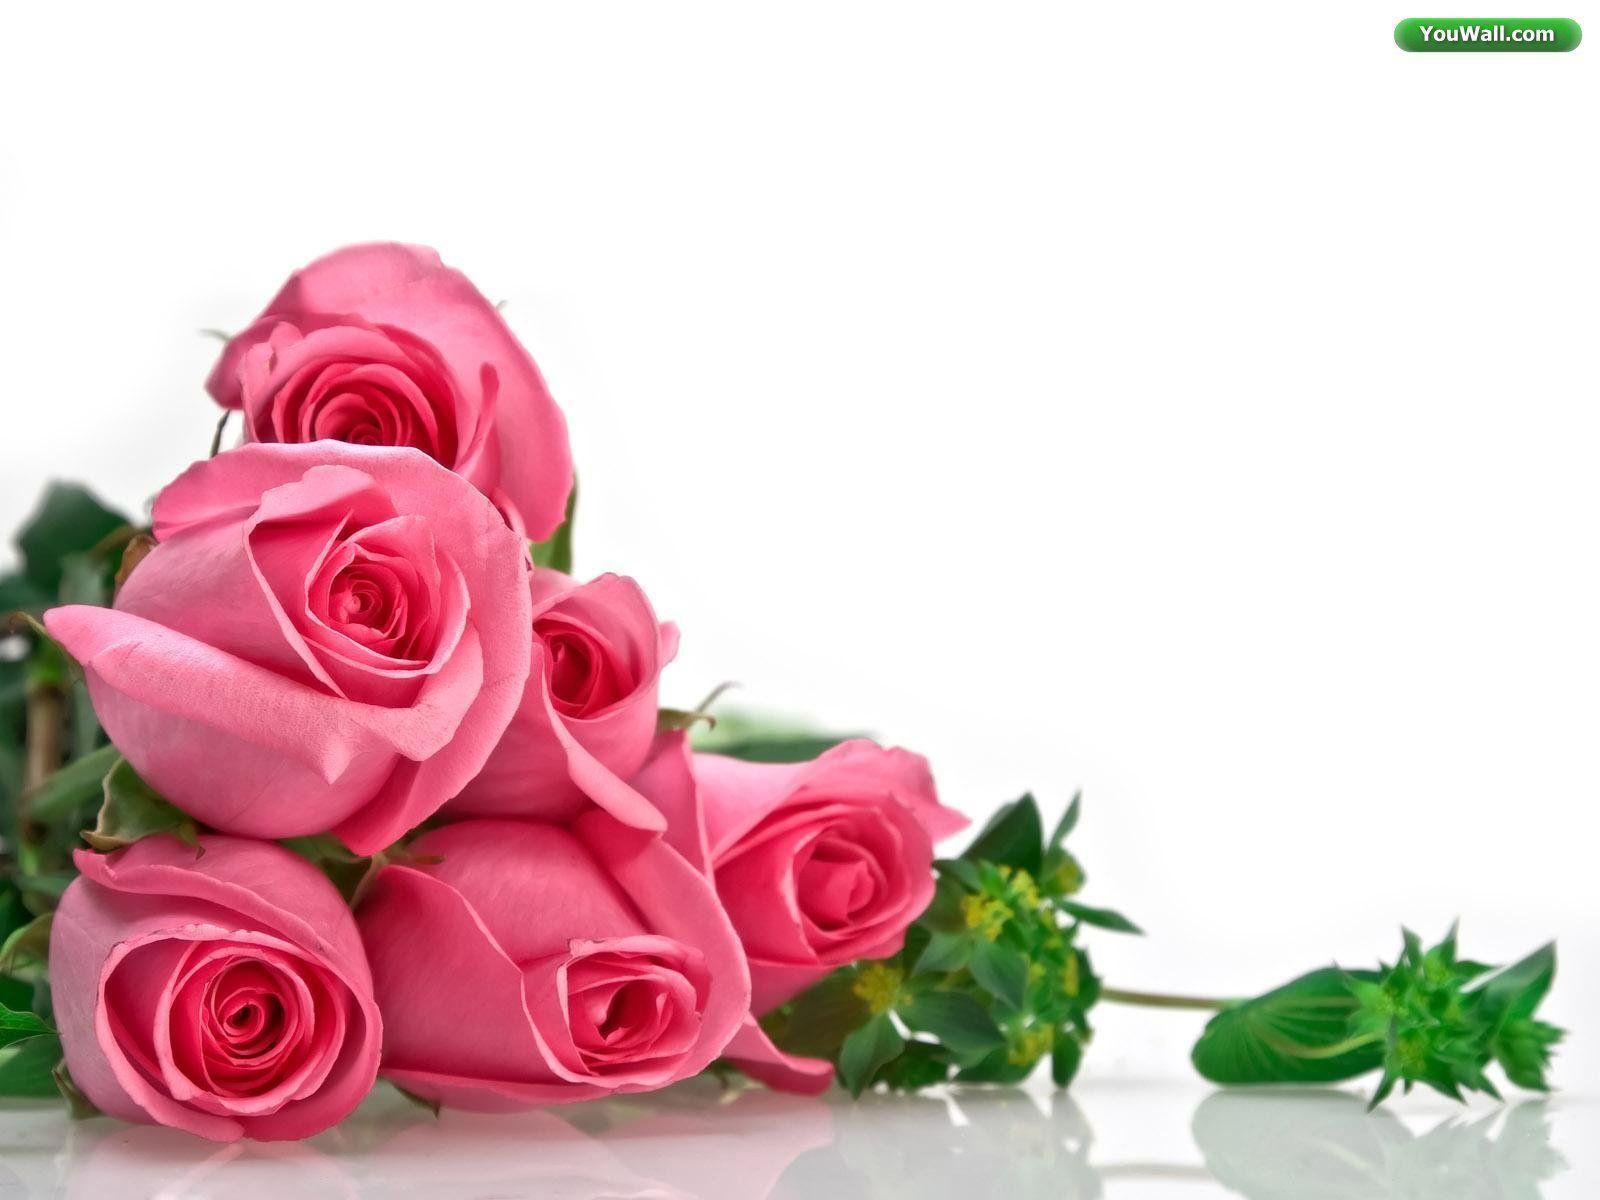 Wedding Flowers: Red Rose & White Rose Wallpaper for Desktop Background